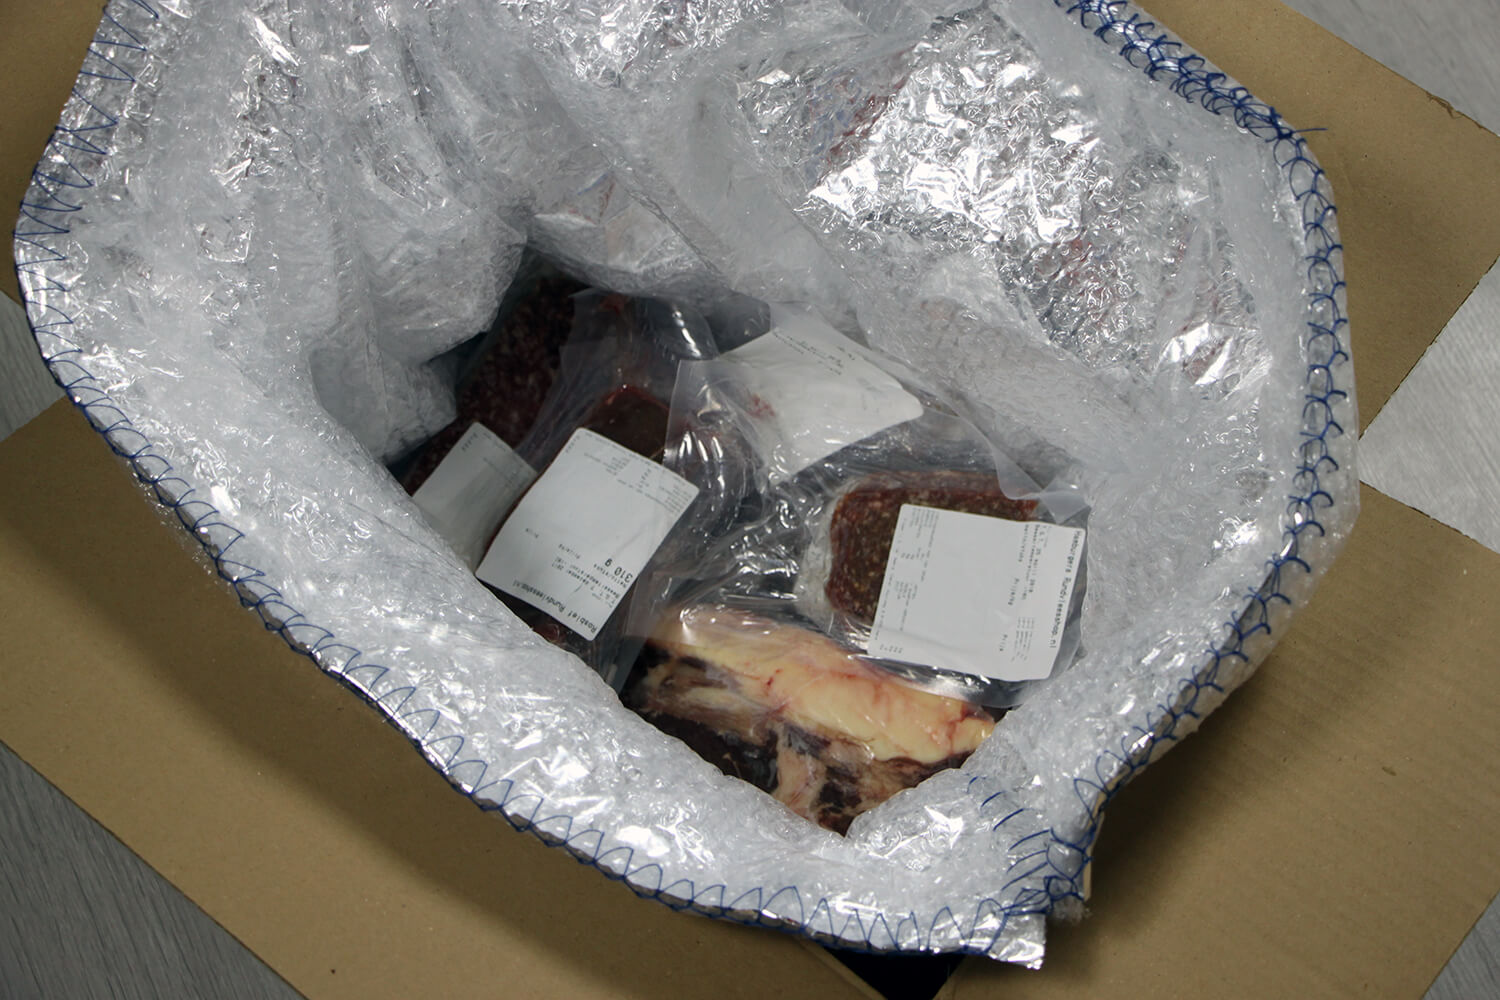 Rundvlees verpakt in een speciale koelverpakking.